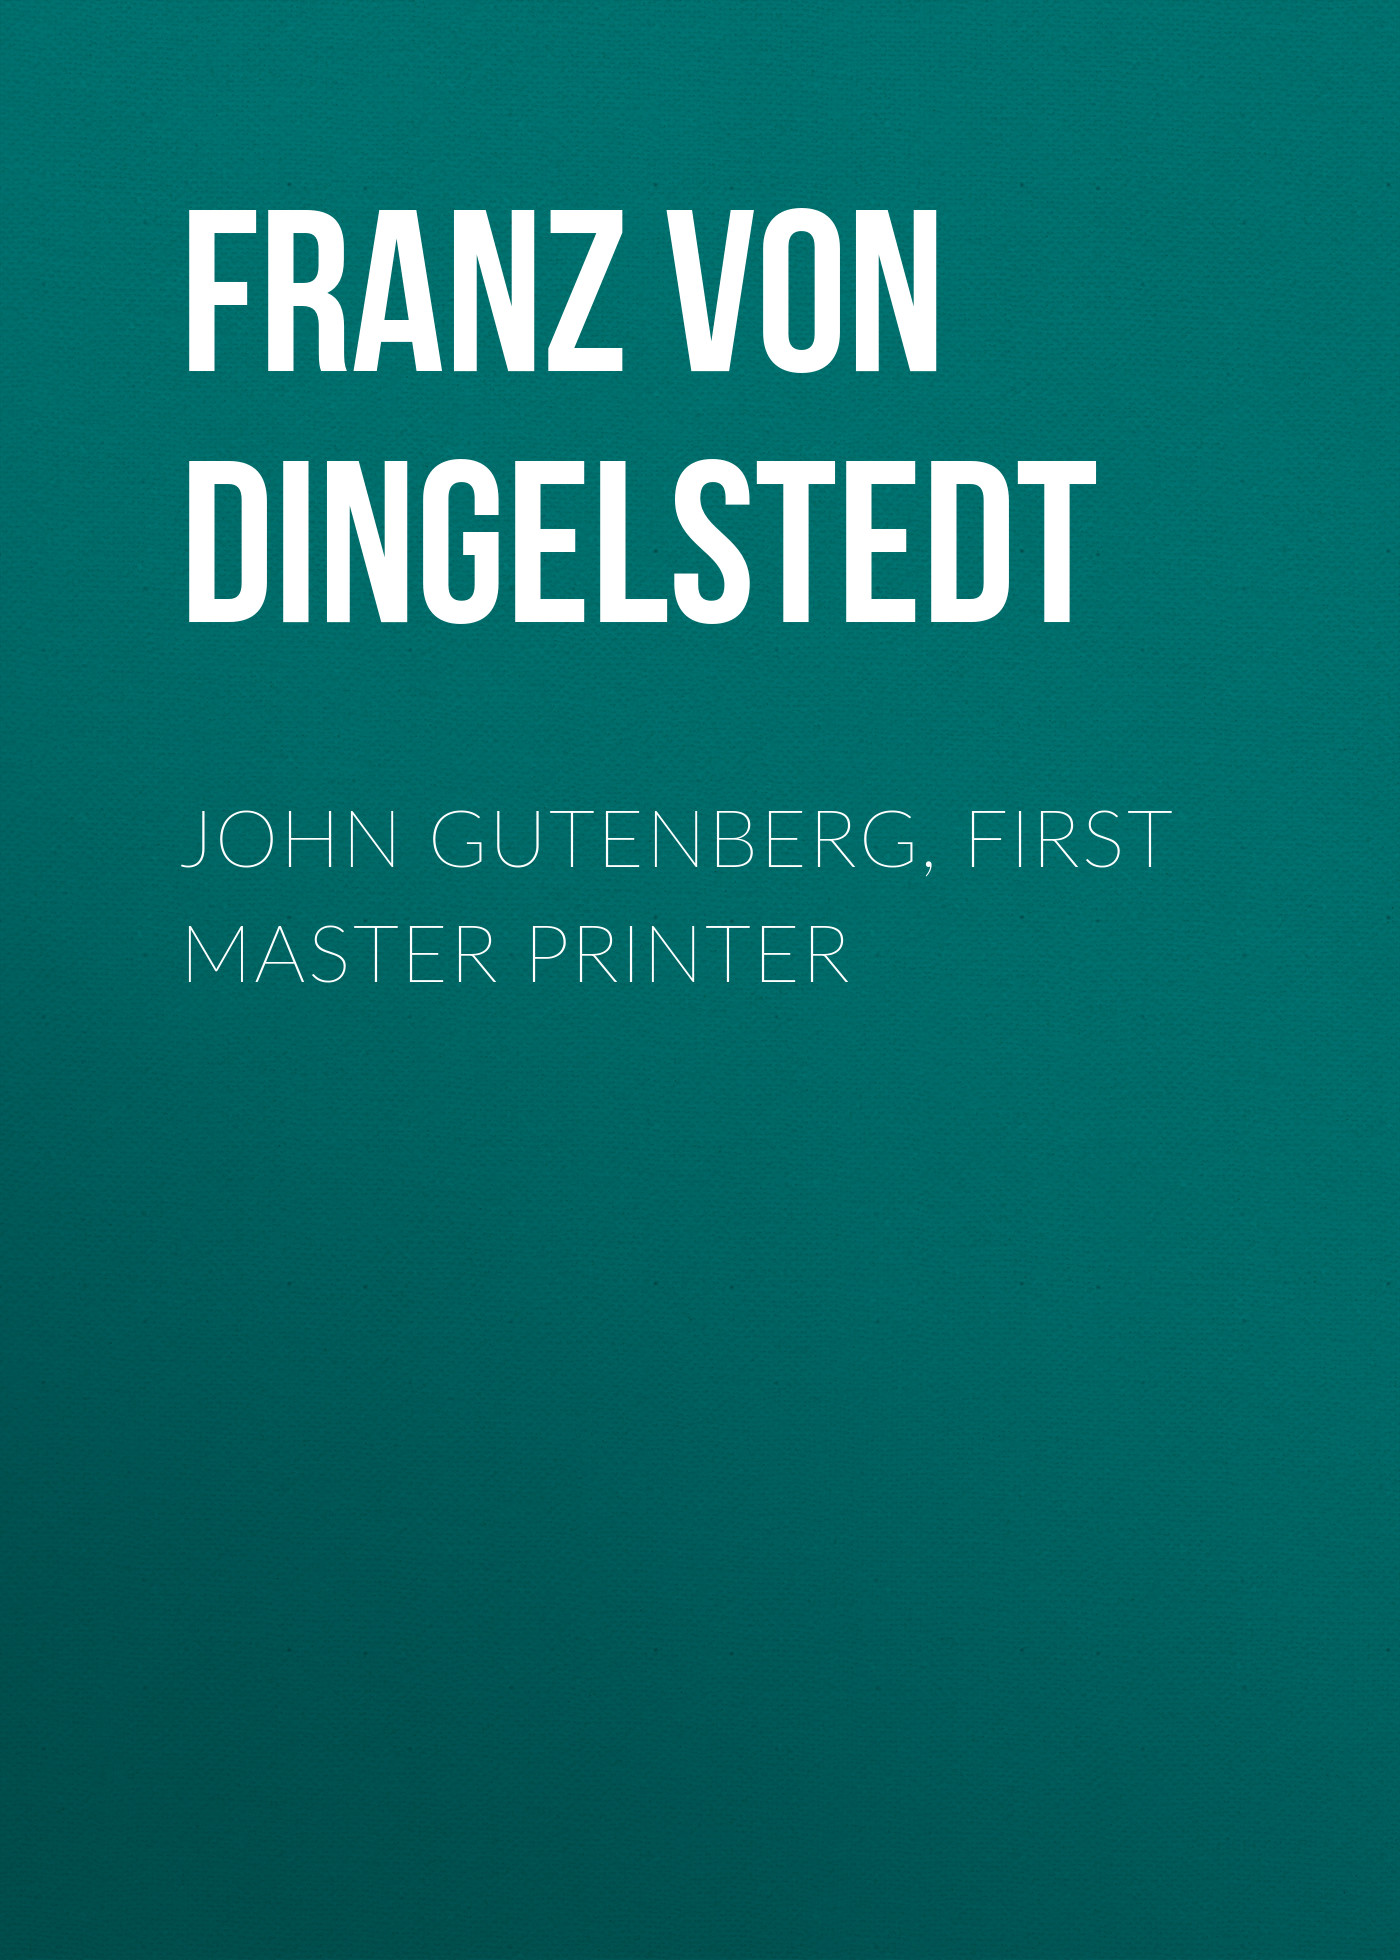 Книга John Gutenberg, First Master Printer из серии , созданная Franz Dingelstedt, может относится к жанру Зарубежная старинная литература, Зарубежная классика. Стоимость электронной книги John Gutenberg, First Master Printer с идентификатором 24621333 составляет 0 руб.